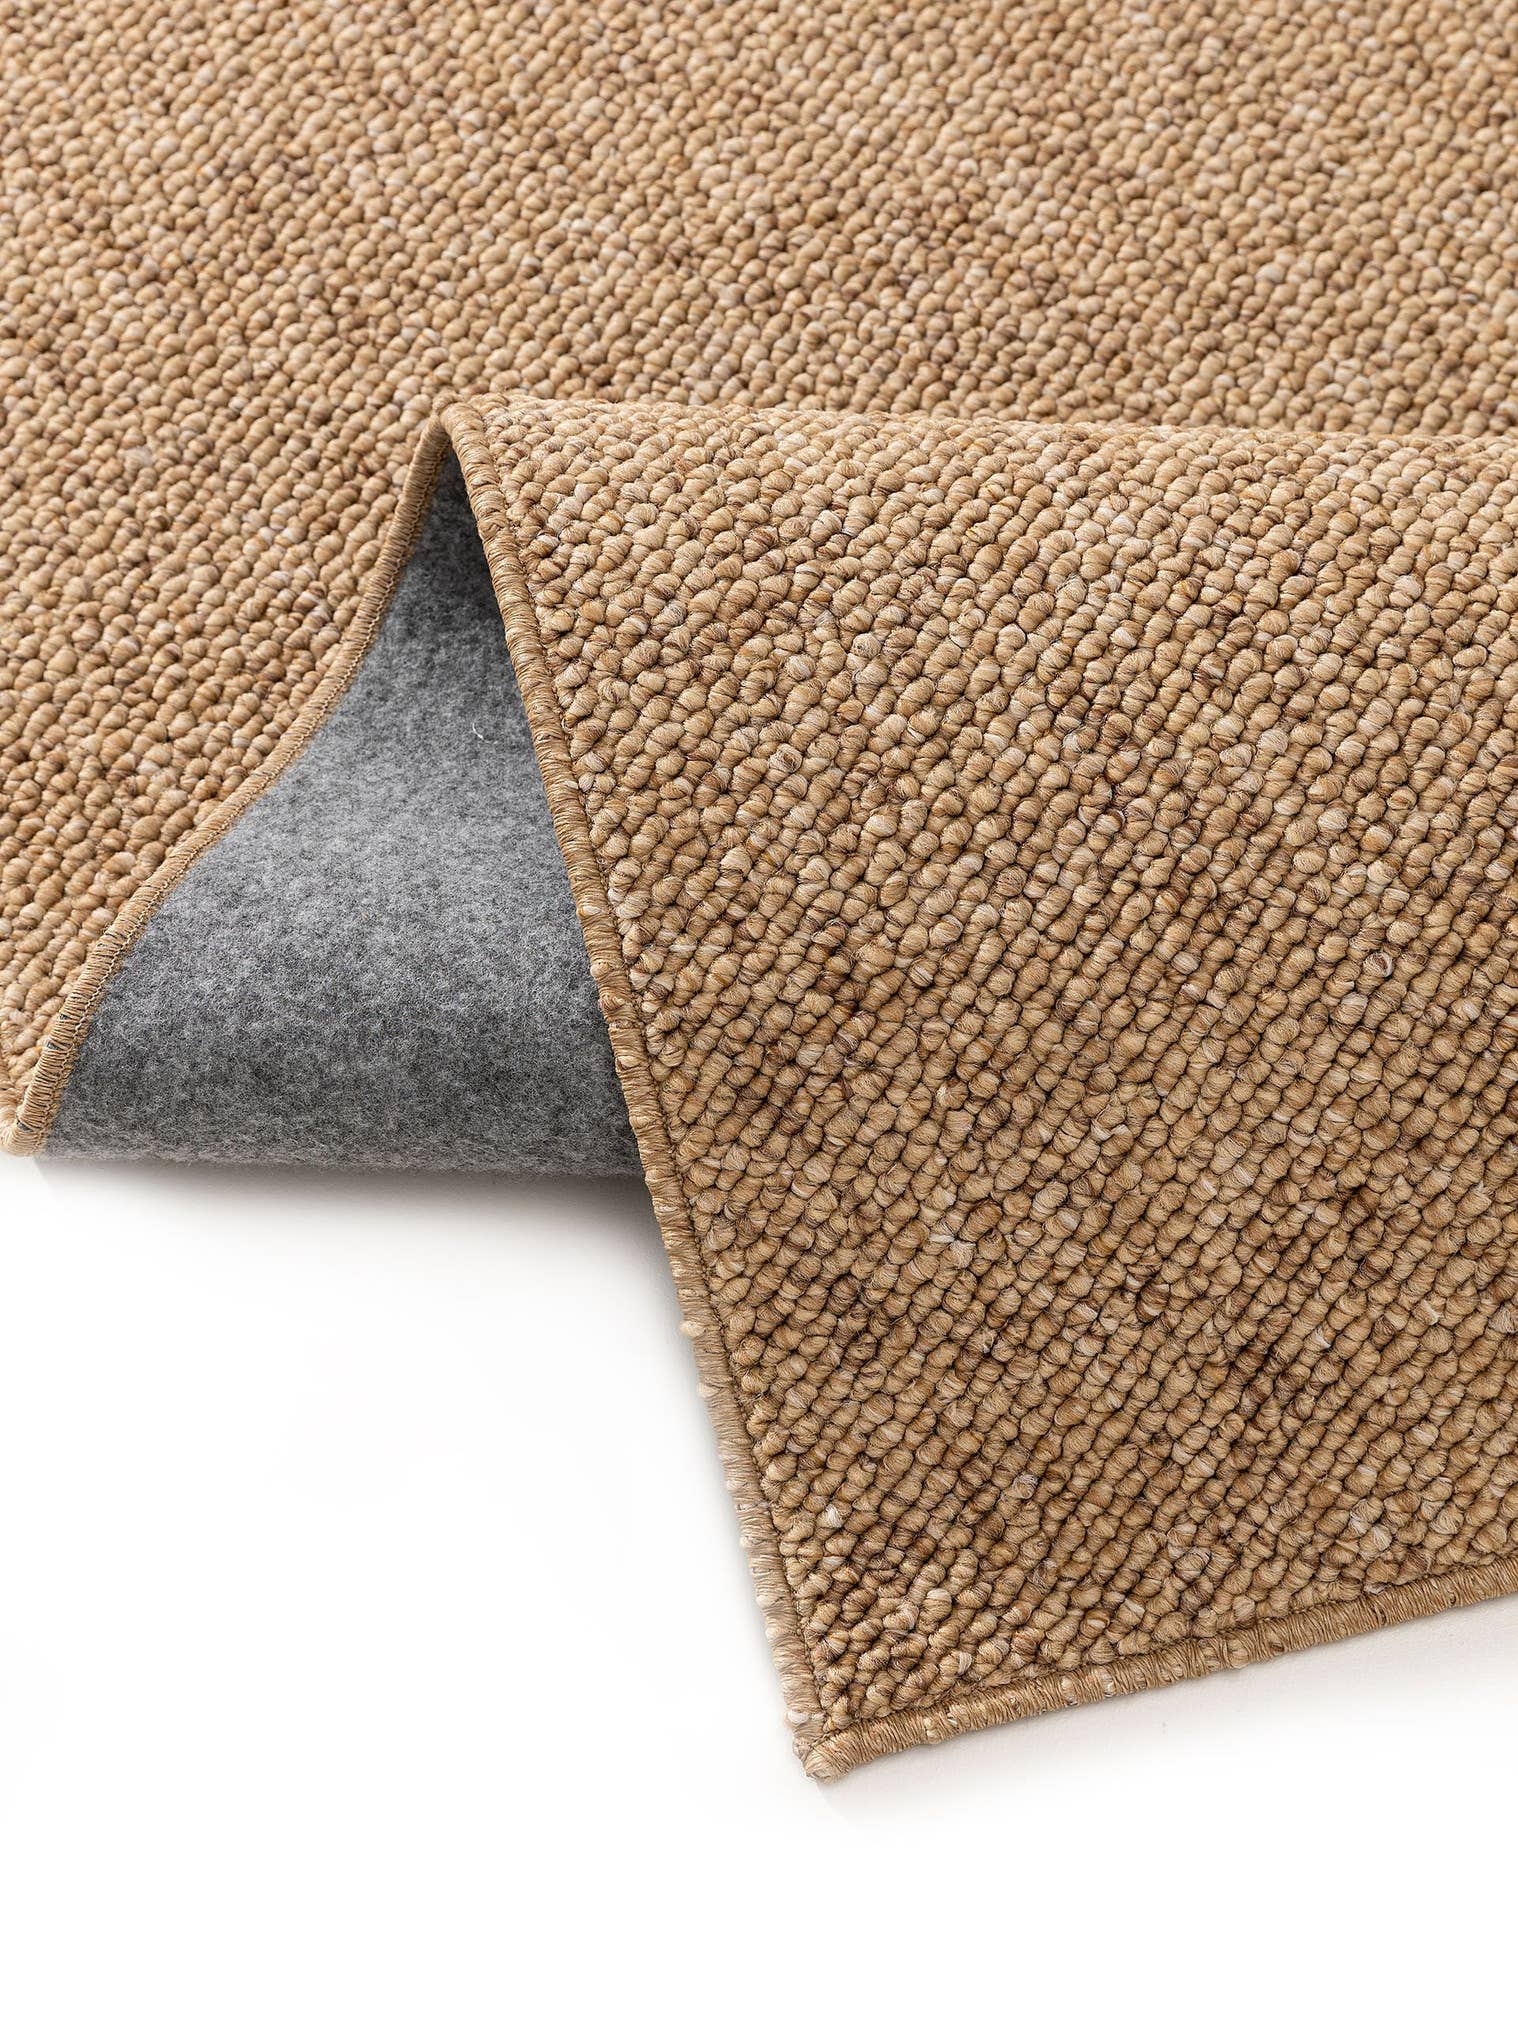 Teppich aus 100% Polypropylen in Braun mit 6 bis 10 mm hohem Flor von benuta Nest